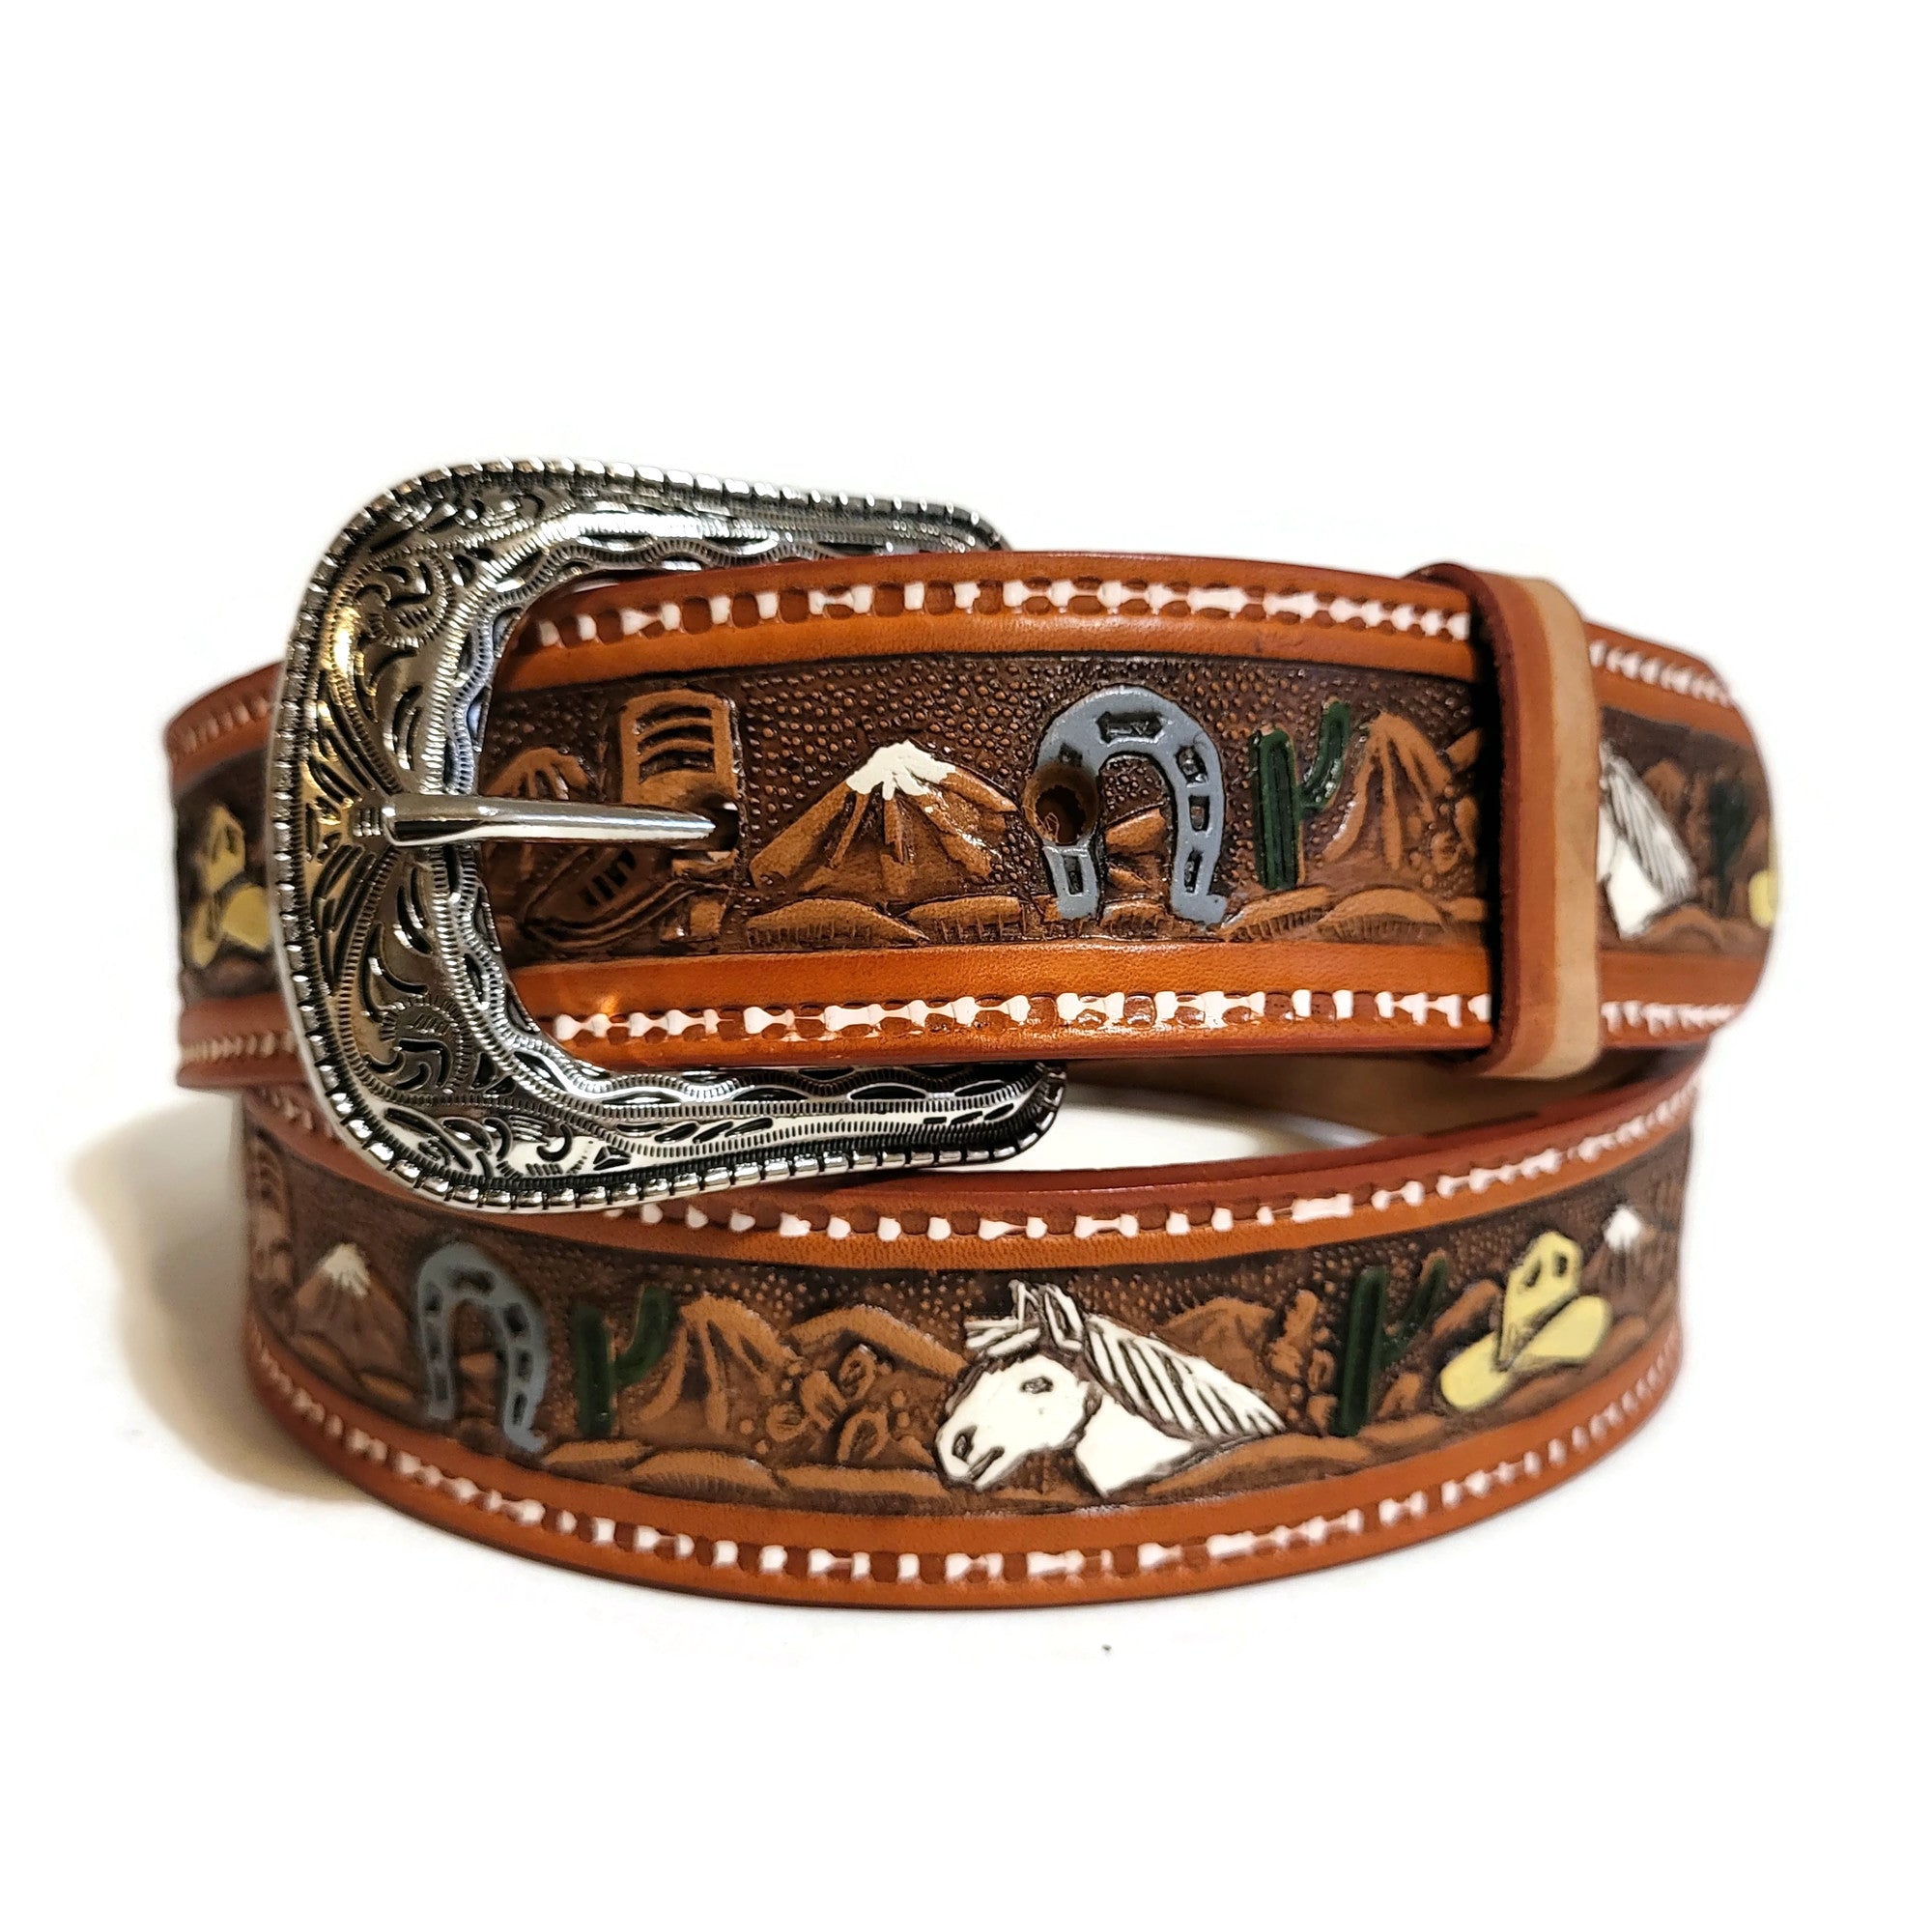 Western Leather Belt for men, brown belt, real leather belt for men, casual belt for men, jeans belt